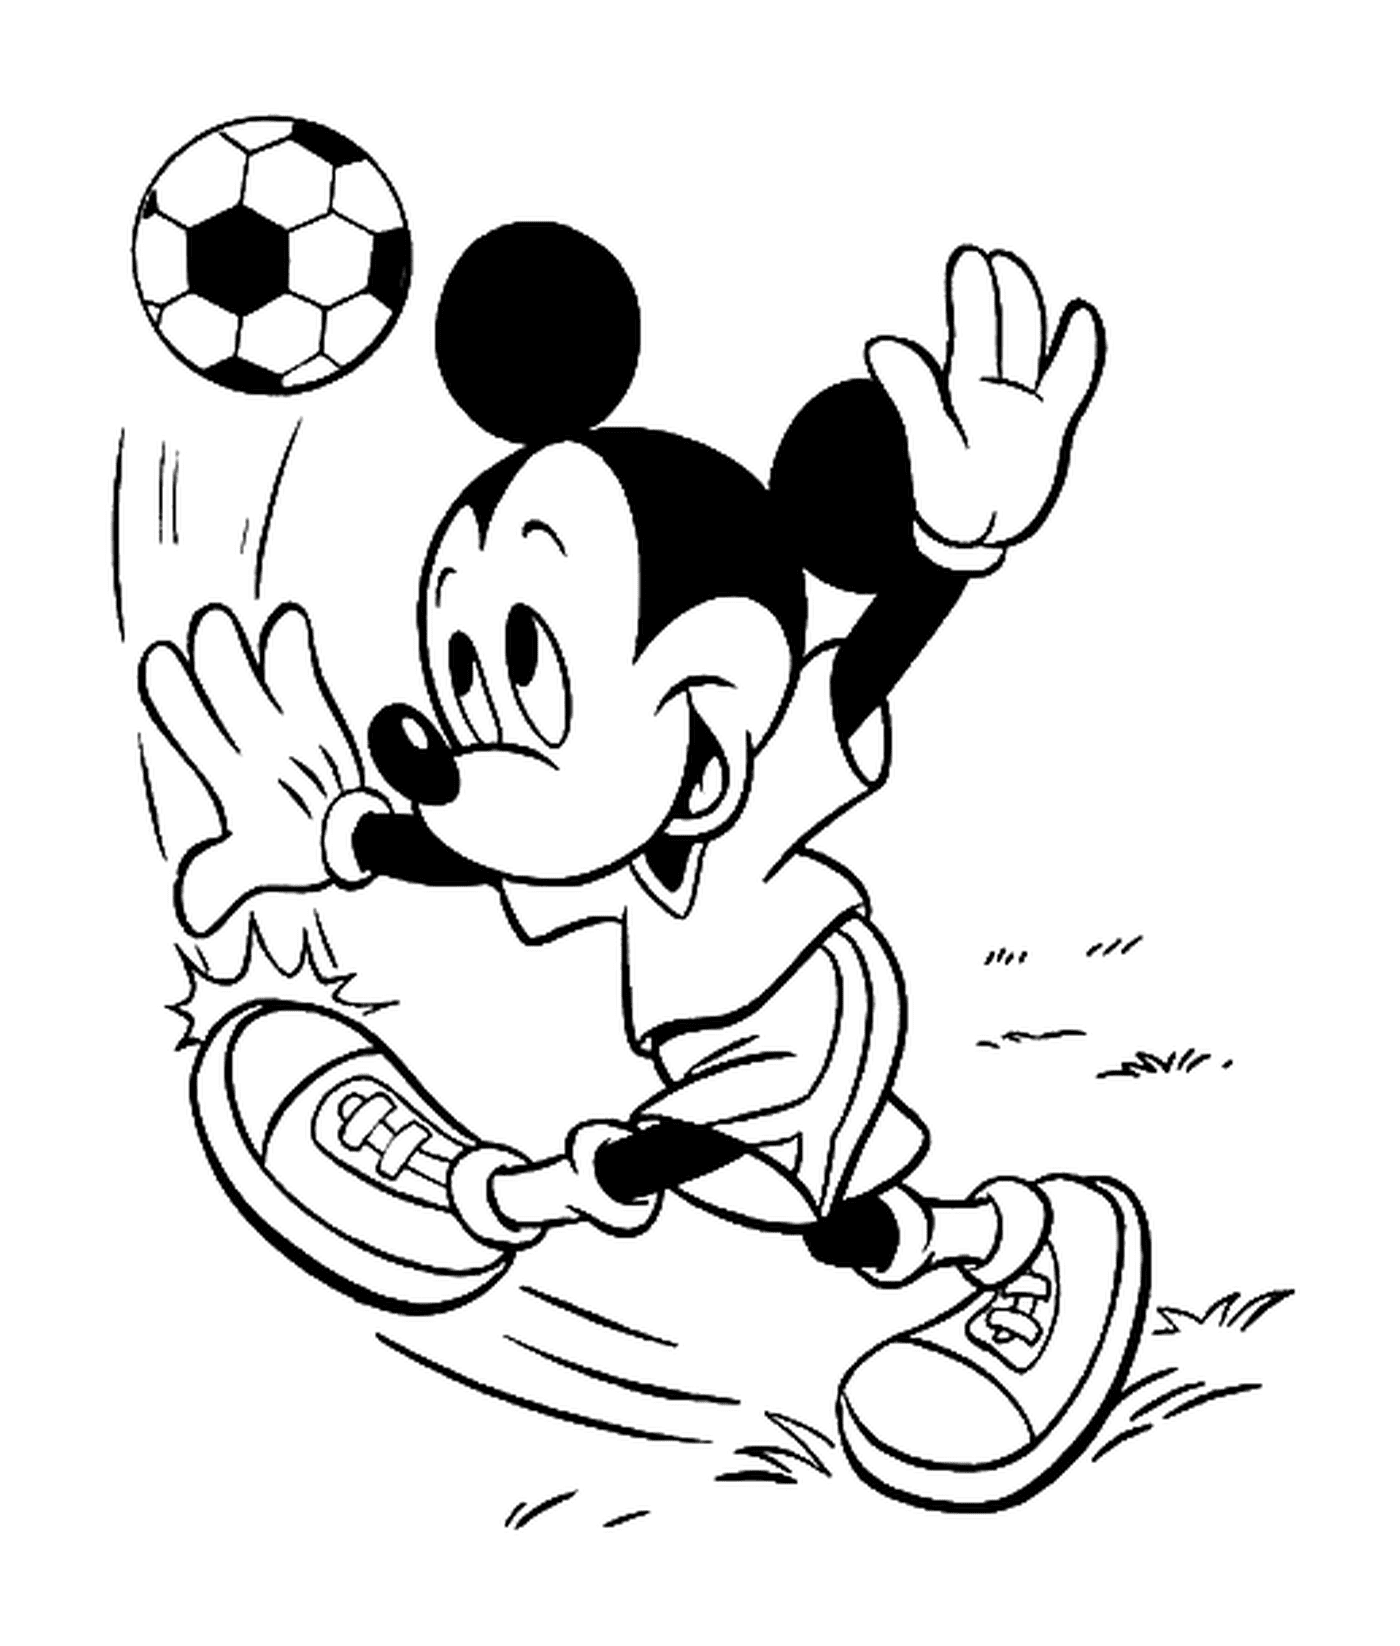  Mickey juega al fútbol con una pelota de fútbol 